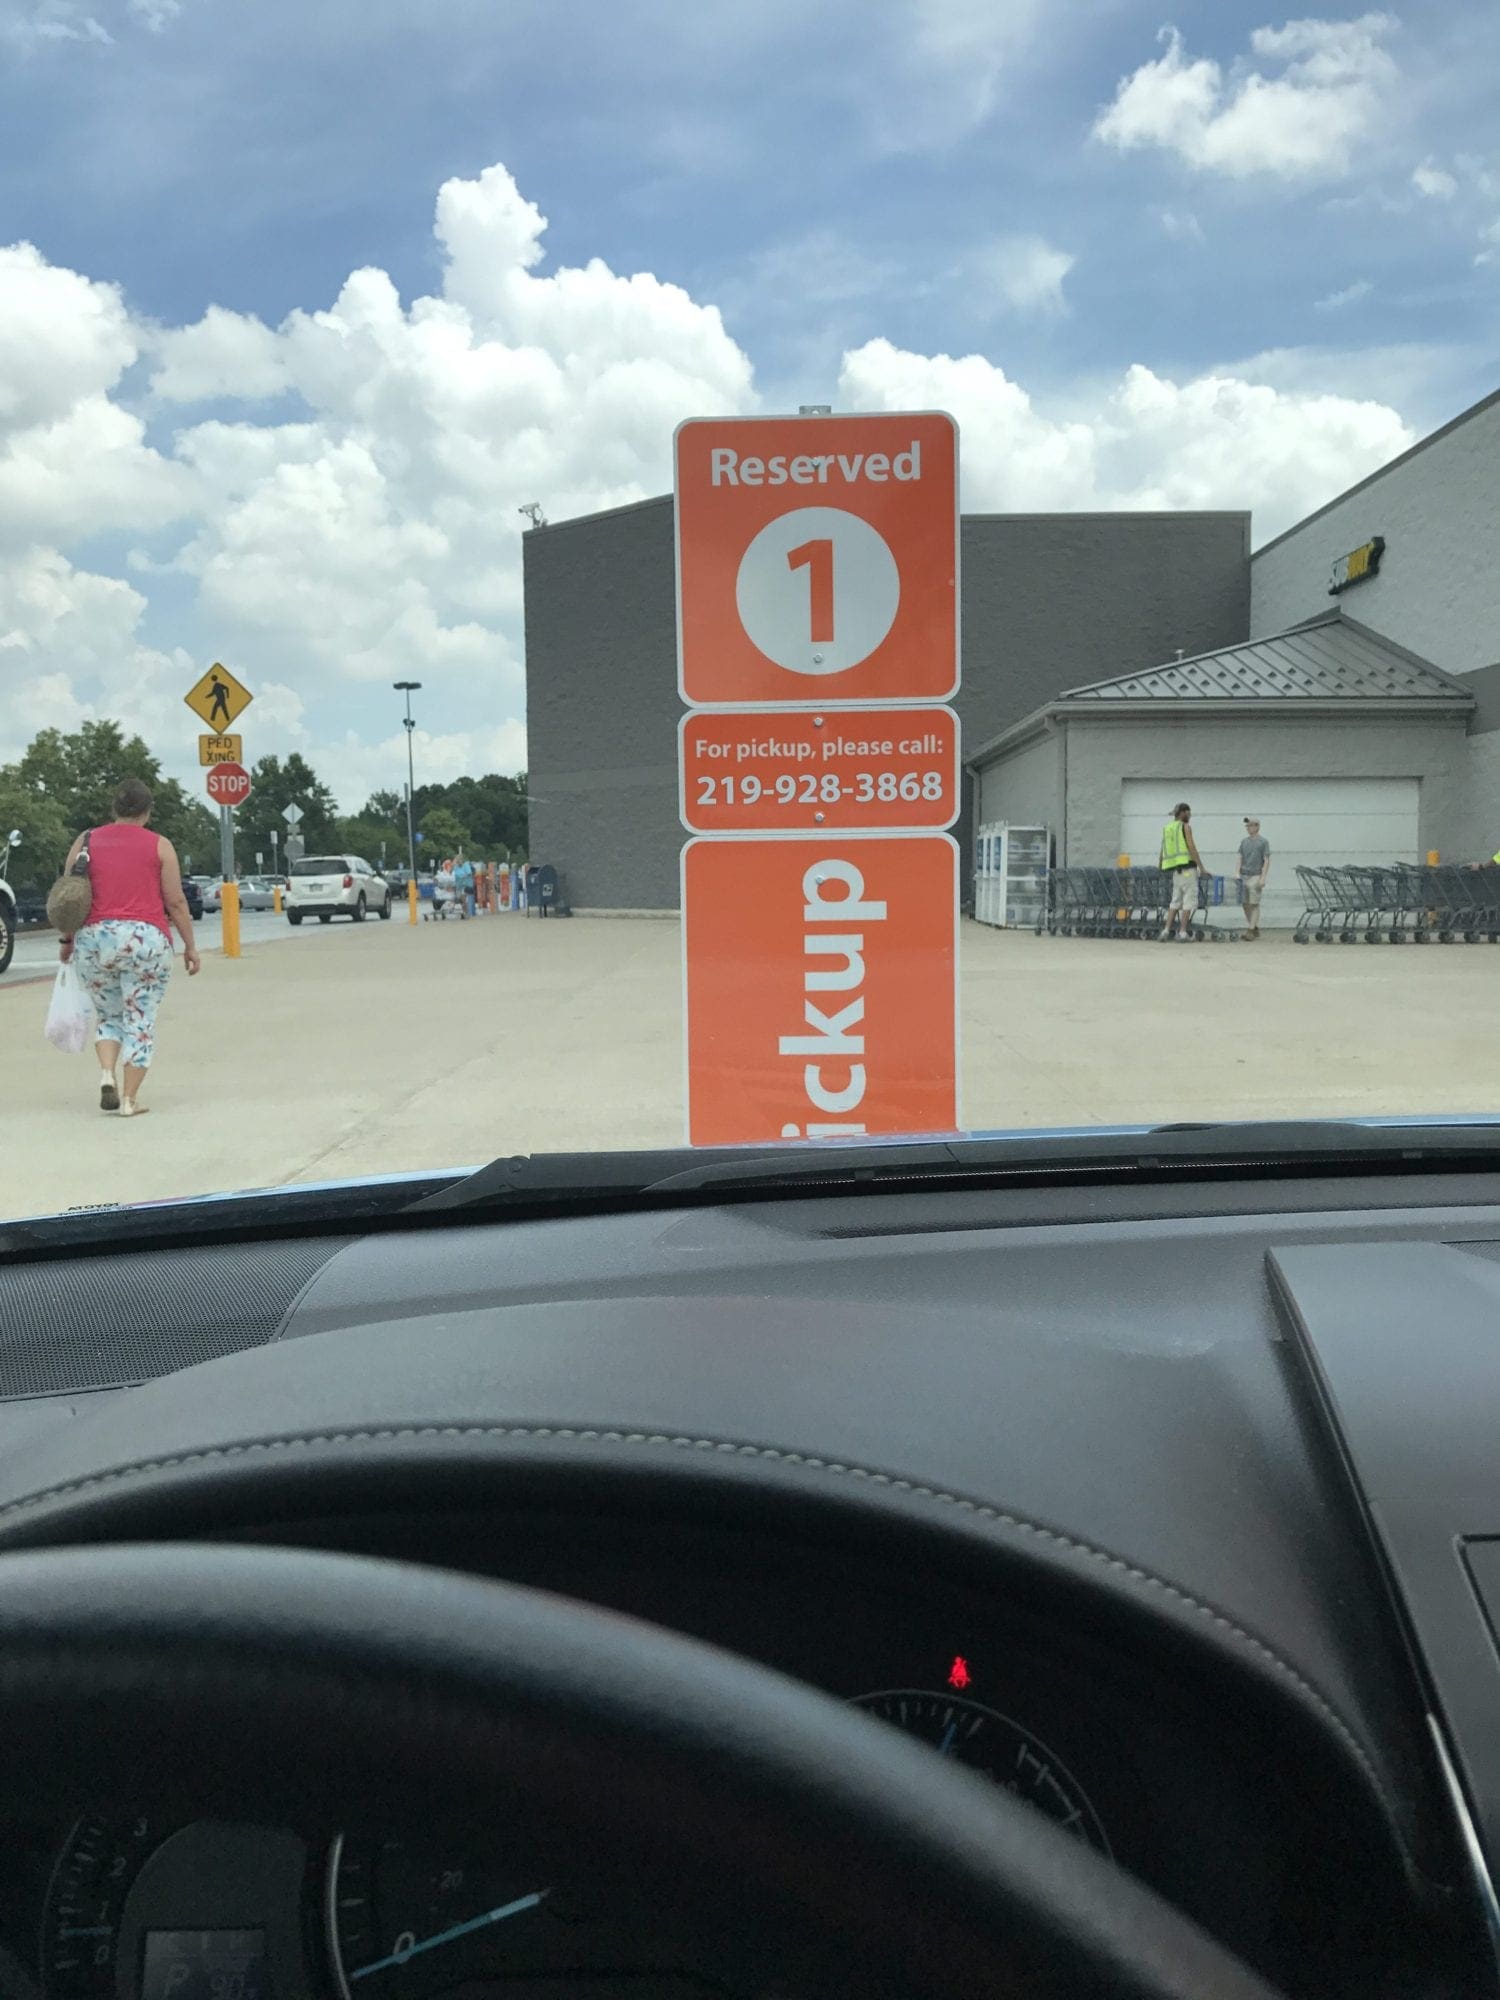 Walmart's free grocery pickup parking spot